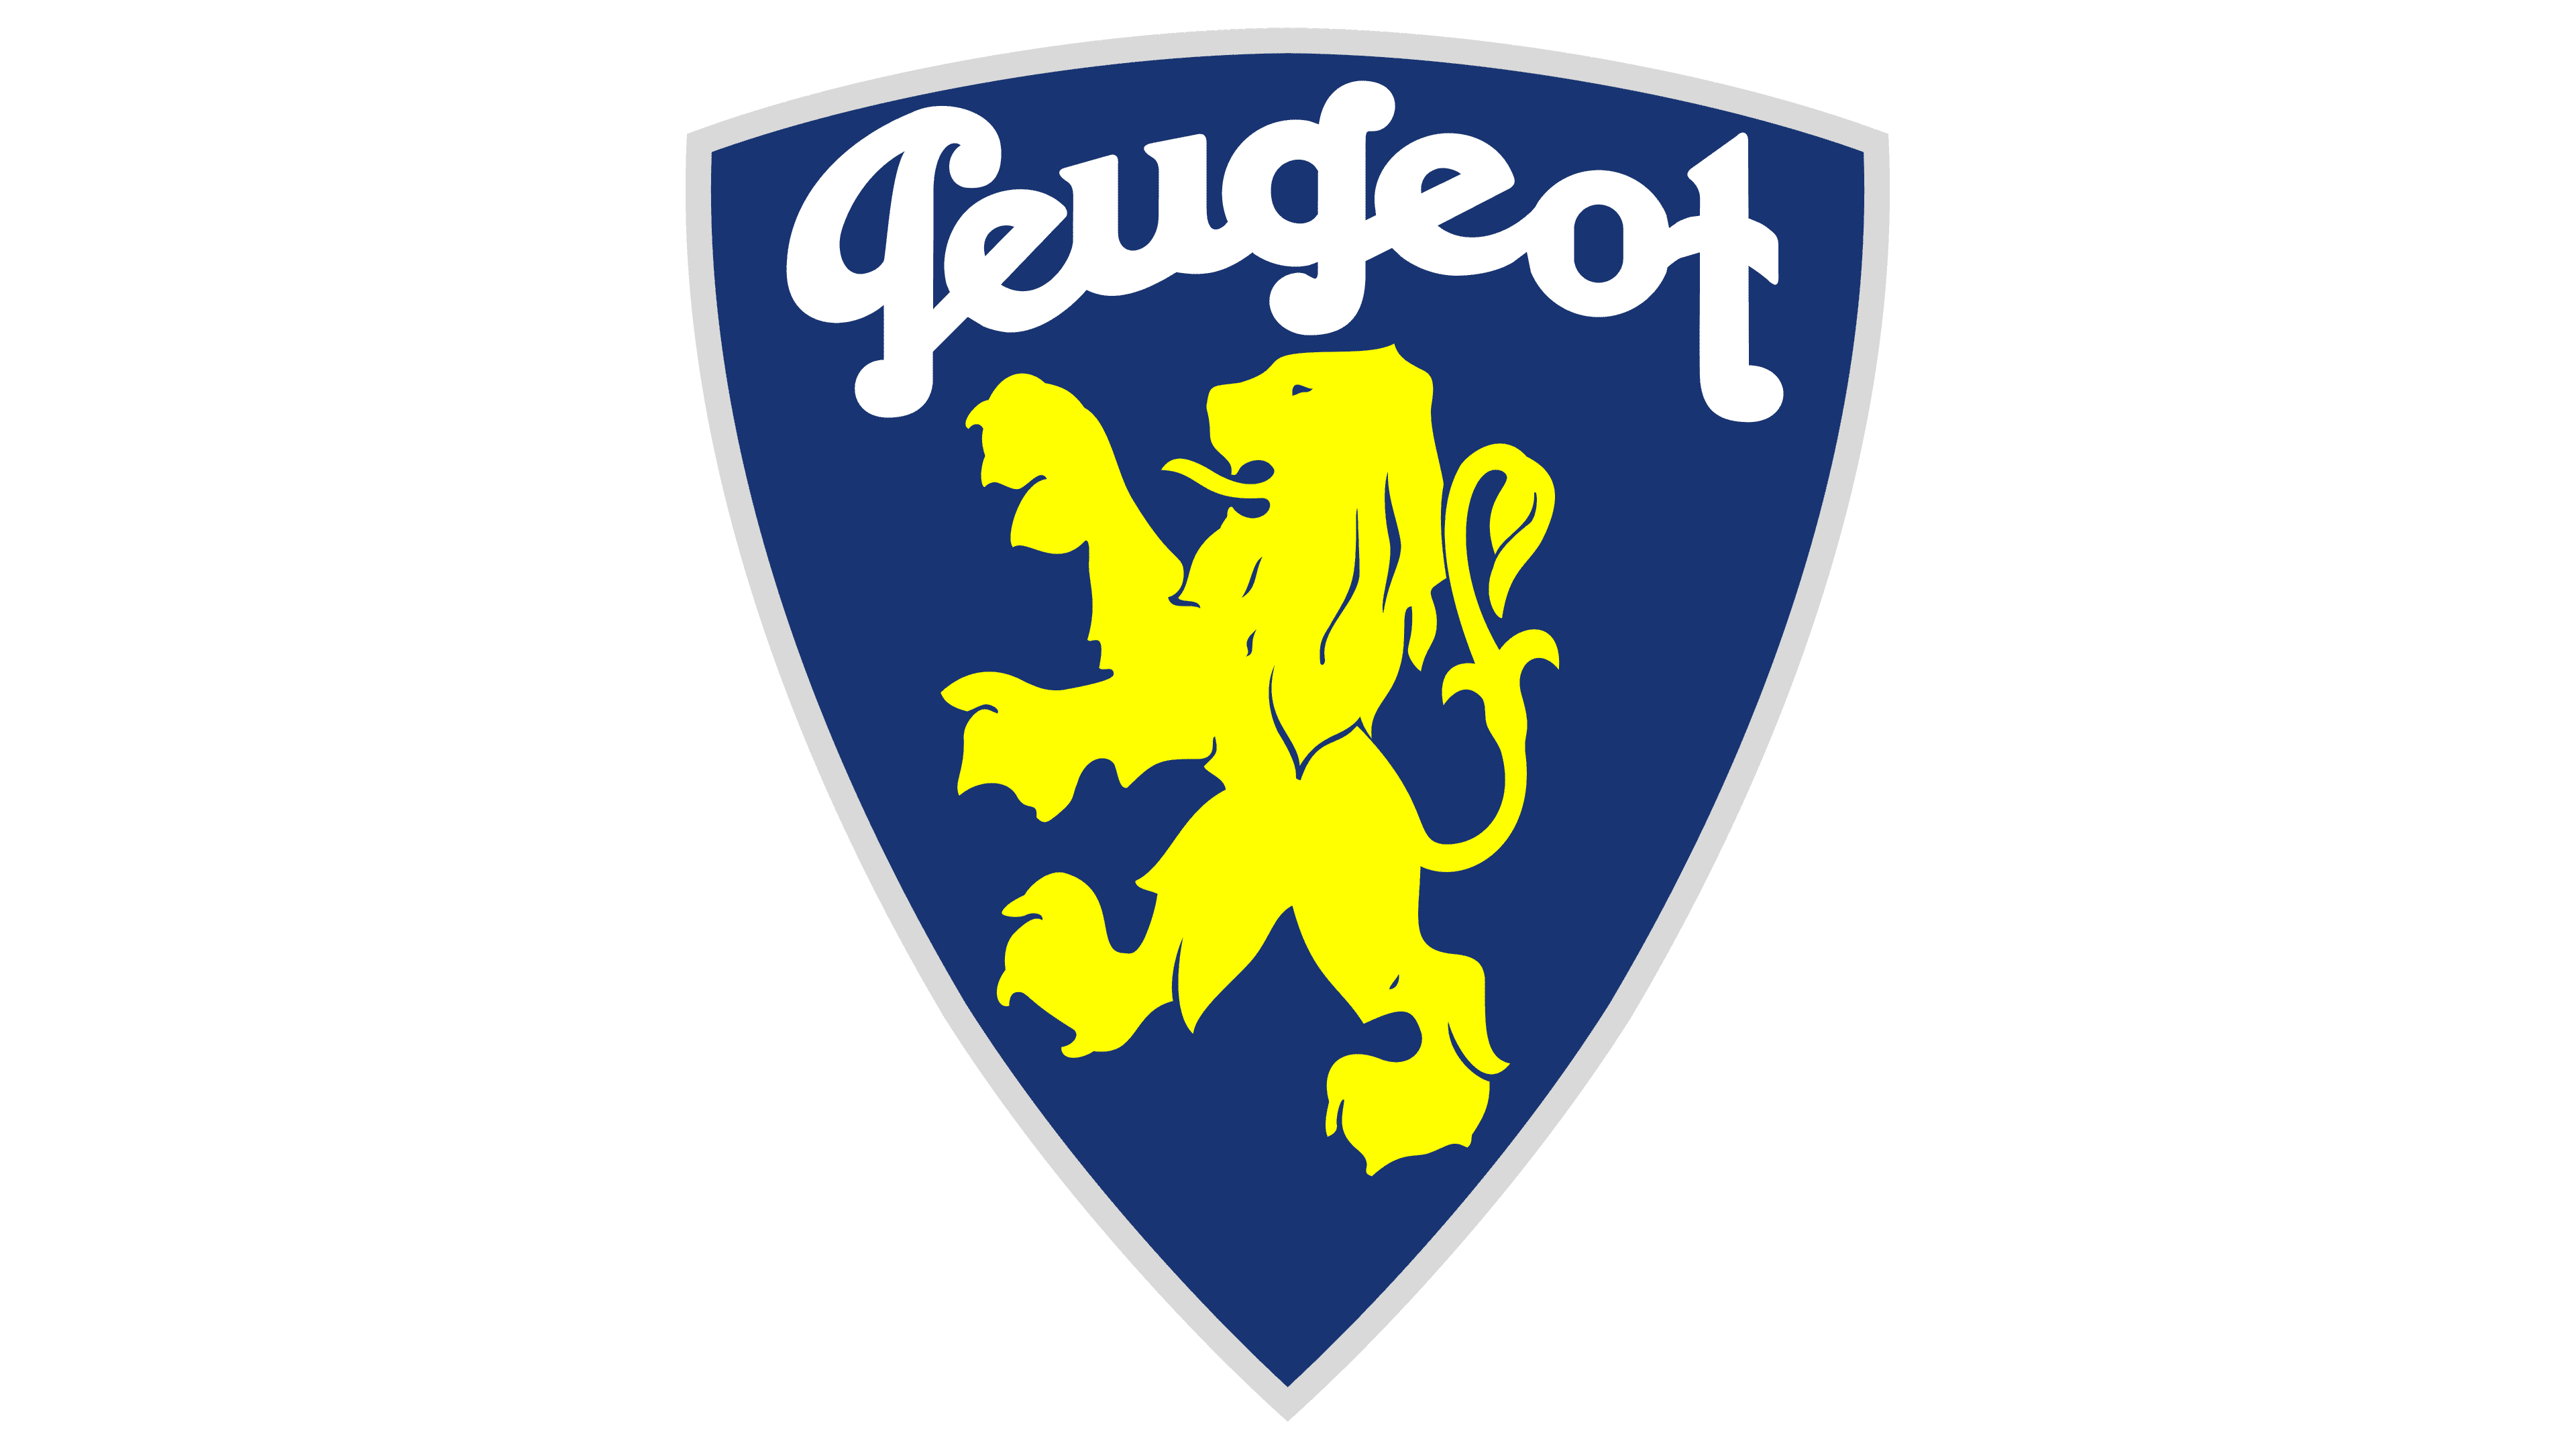 Emblème de logo Peugeot – Povcars